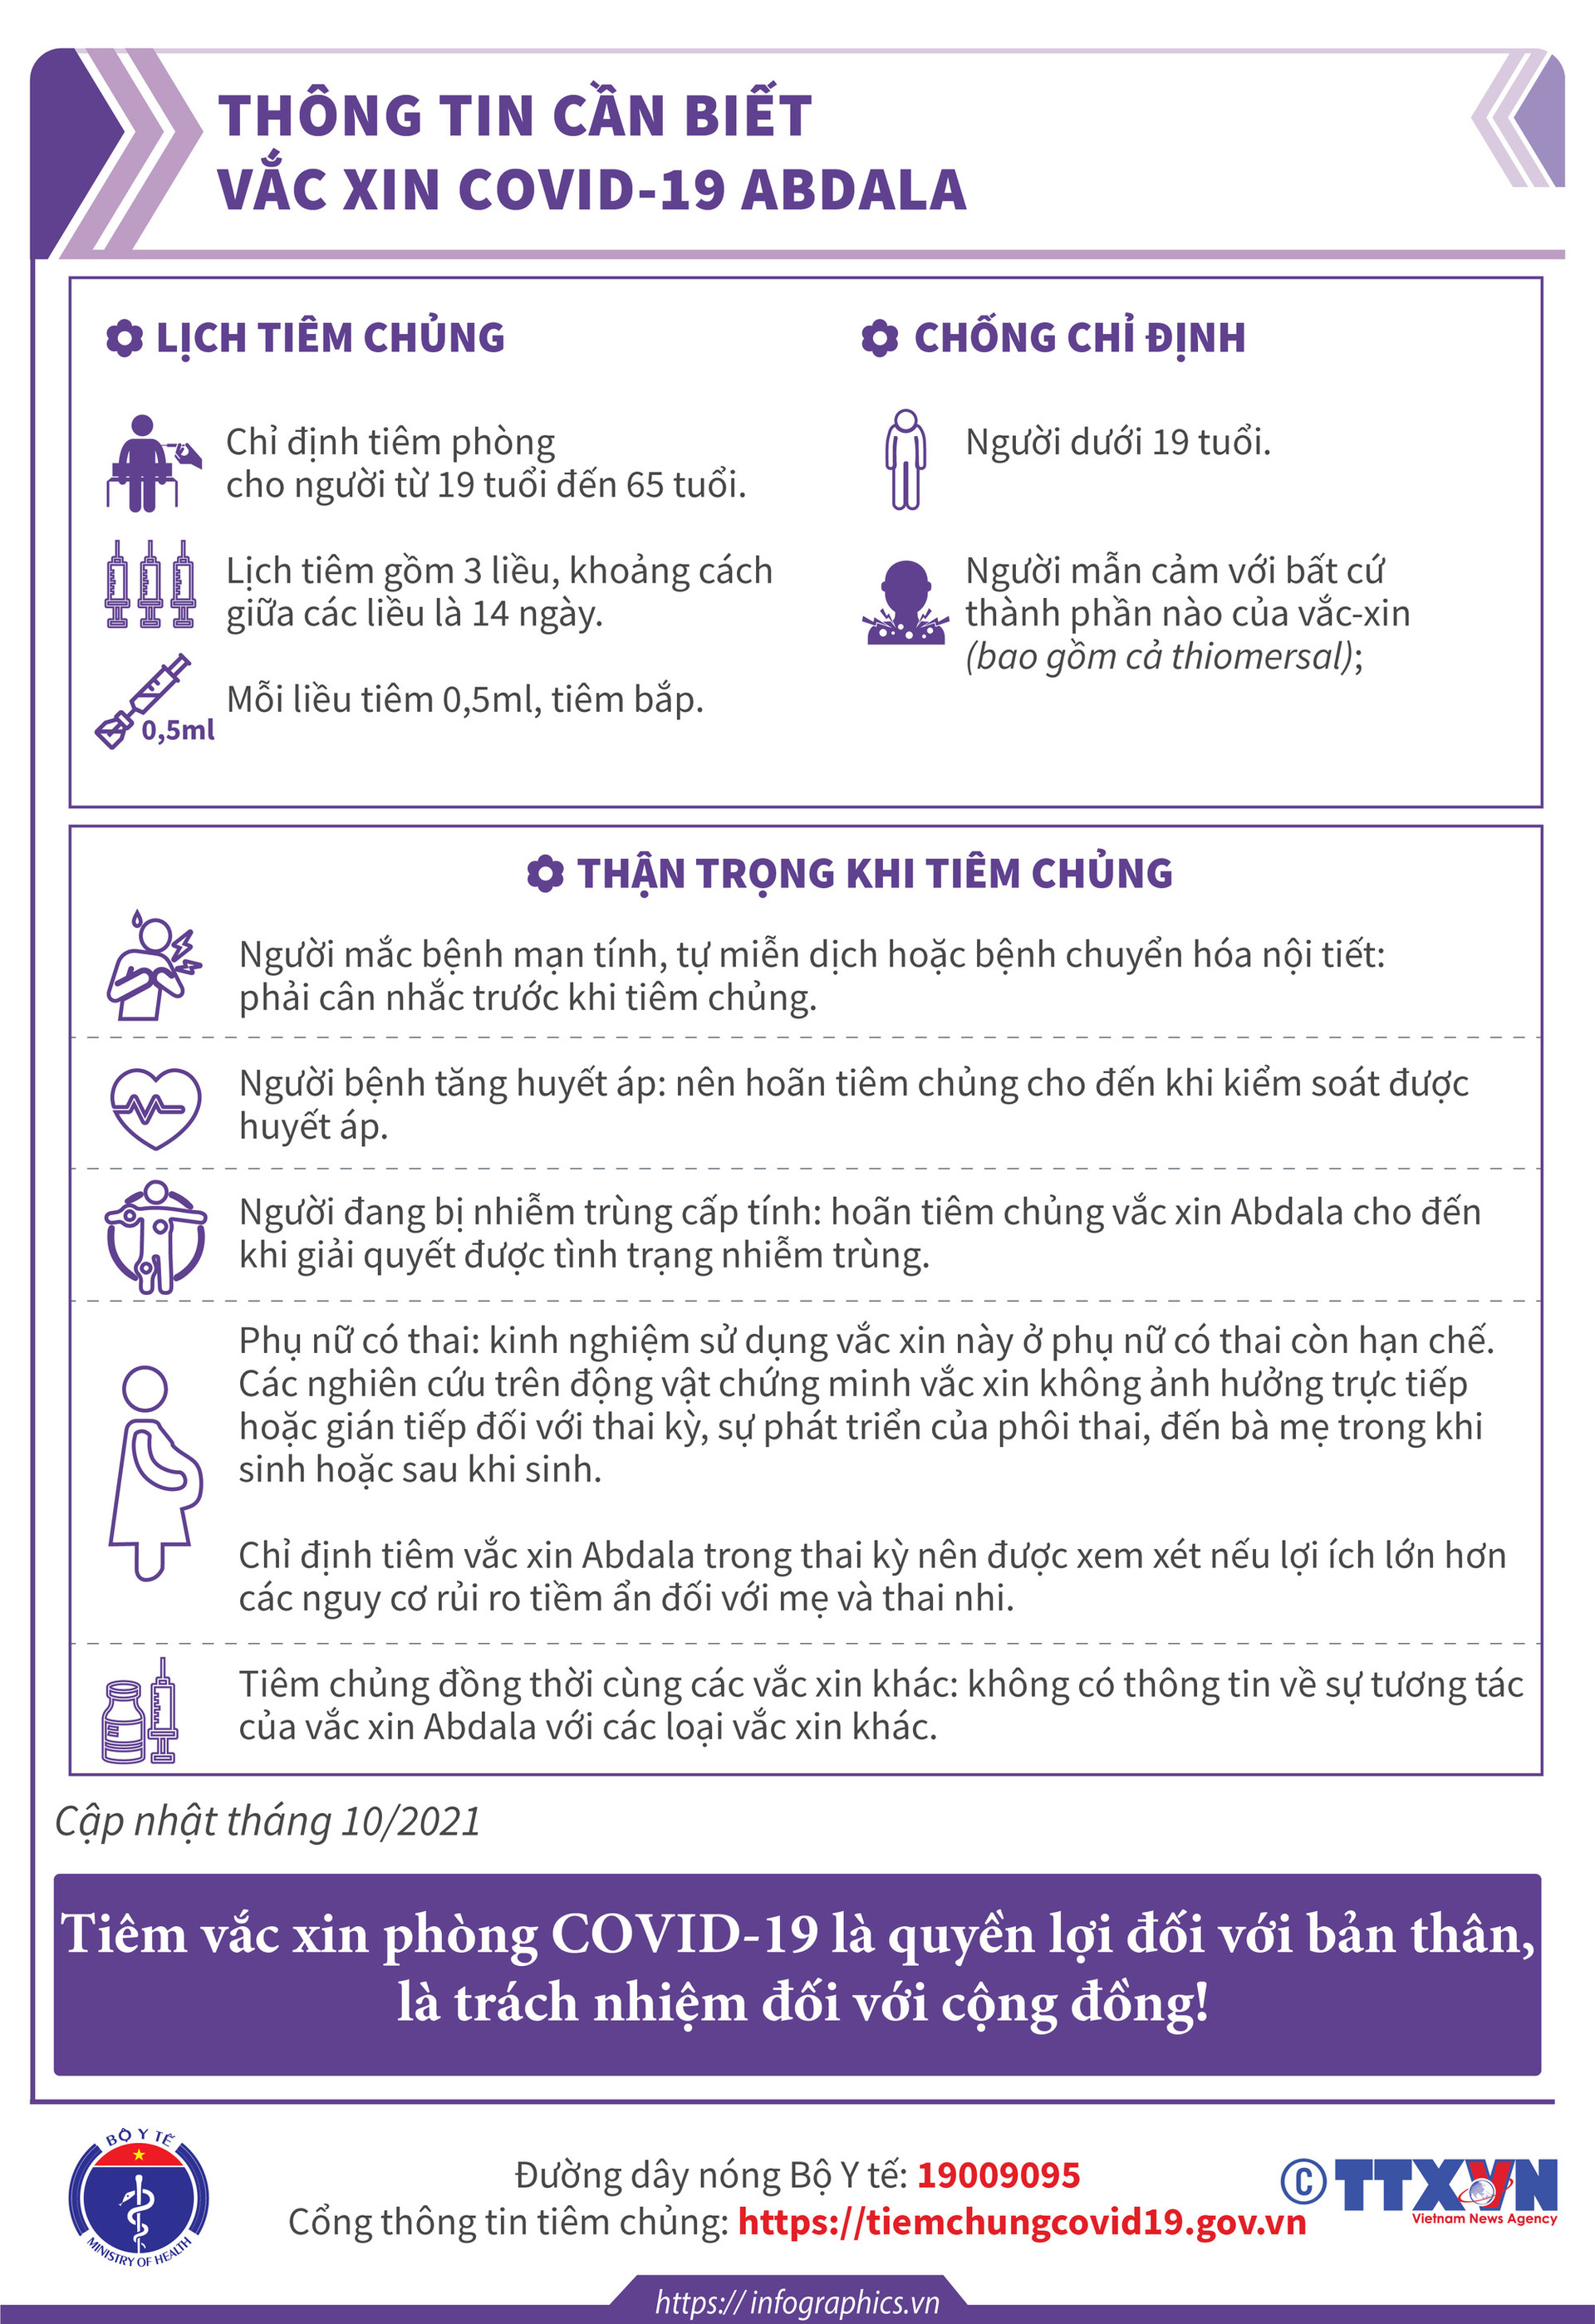 [Infographic] Thông tin cần biết về 03 loại vaccine phòng COVID-19: Vaccine Hayat-Vax, vaccine Verocell, vaccine Abdala  - Ảnh 10.